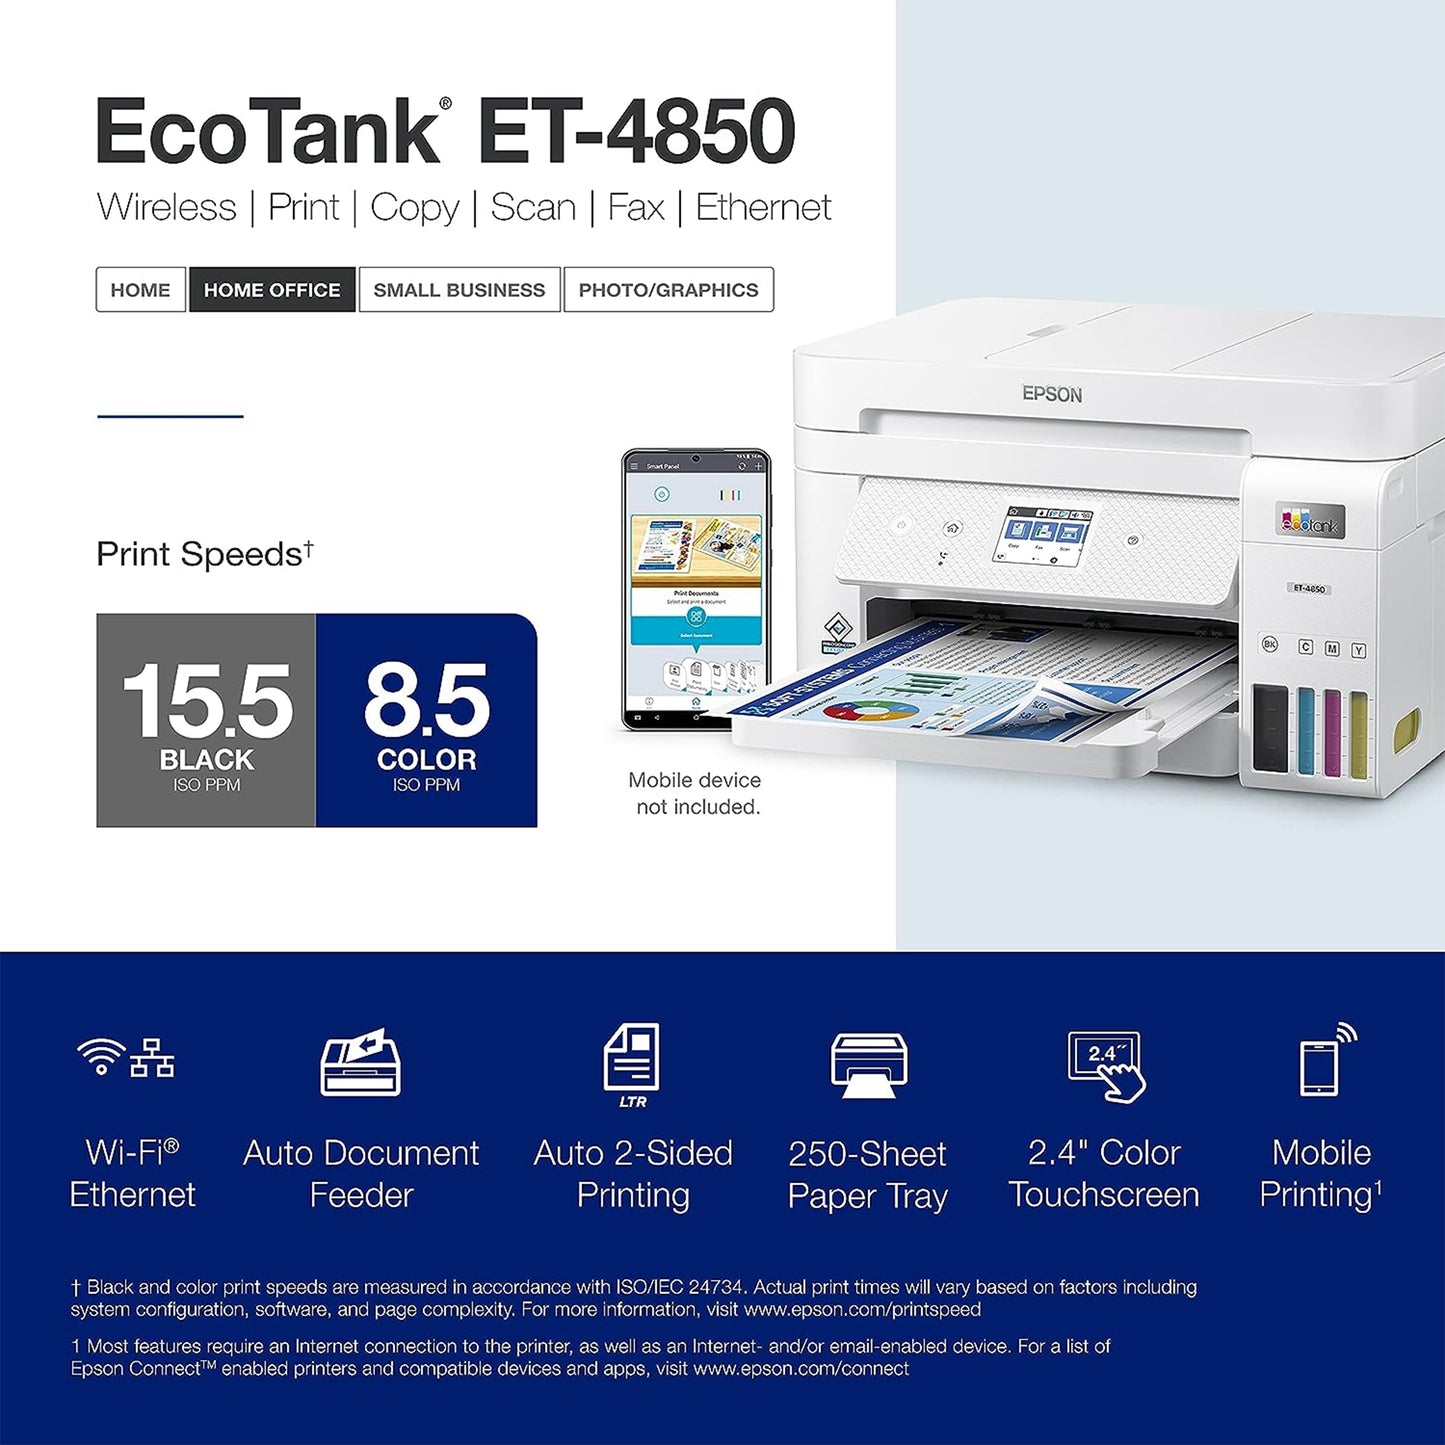 طابعة Epson EcoTank ET-4850 Supertank اللاسلكية الكل في واحد خالية من الخرطوشة مع ماسح ضوئي وناسخة وفاكس ووحدة تغذية المستندات التلقائية وإيثرنت - مكتب الطابعة المثالي - أبيض، متوسط 